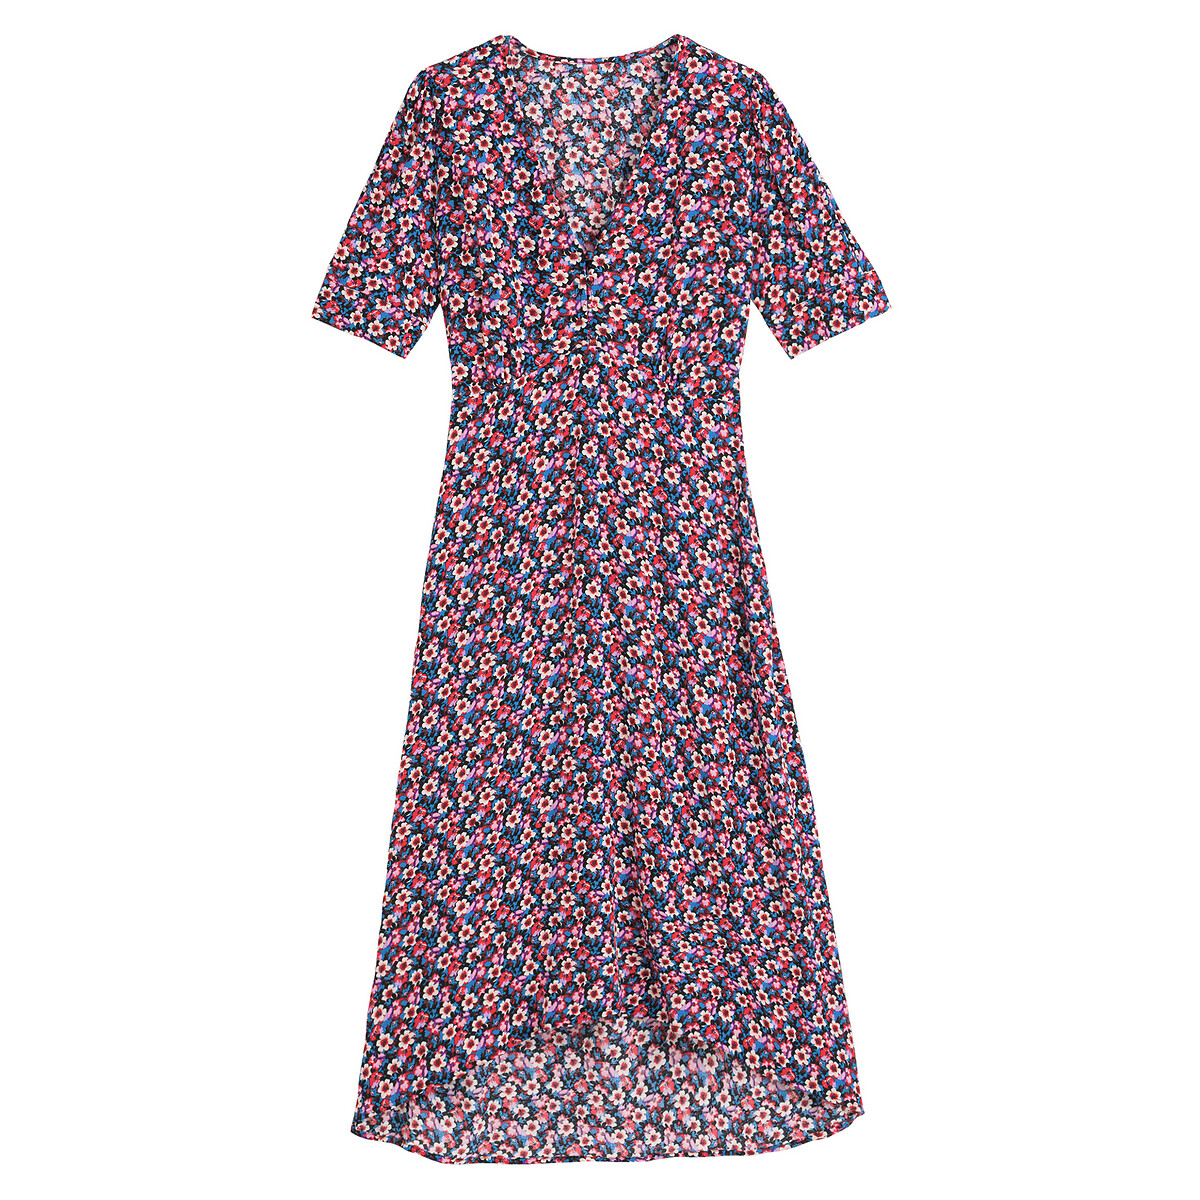 Платье LaRedoute С V-образным вырезом короткие рукава и цветочный принт 42 другие, размер 42 - фото 5